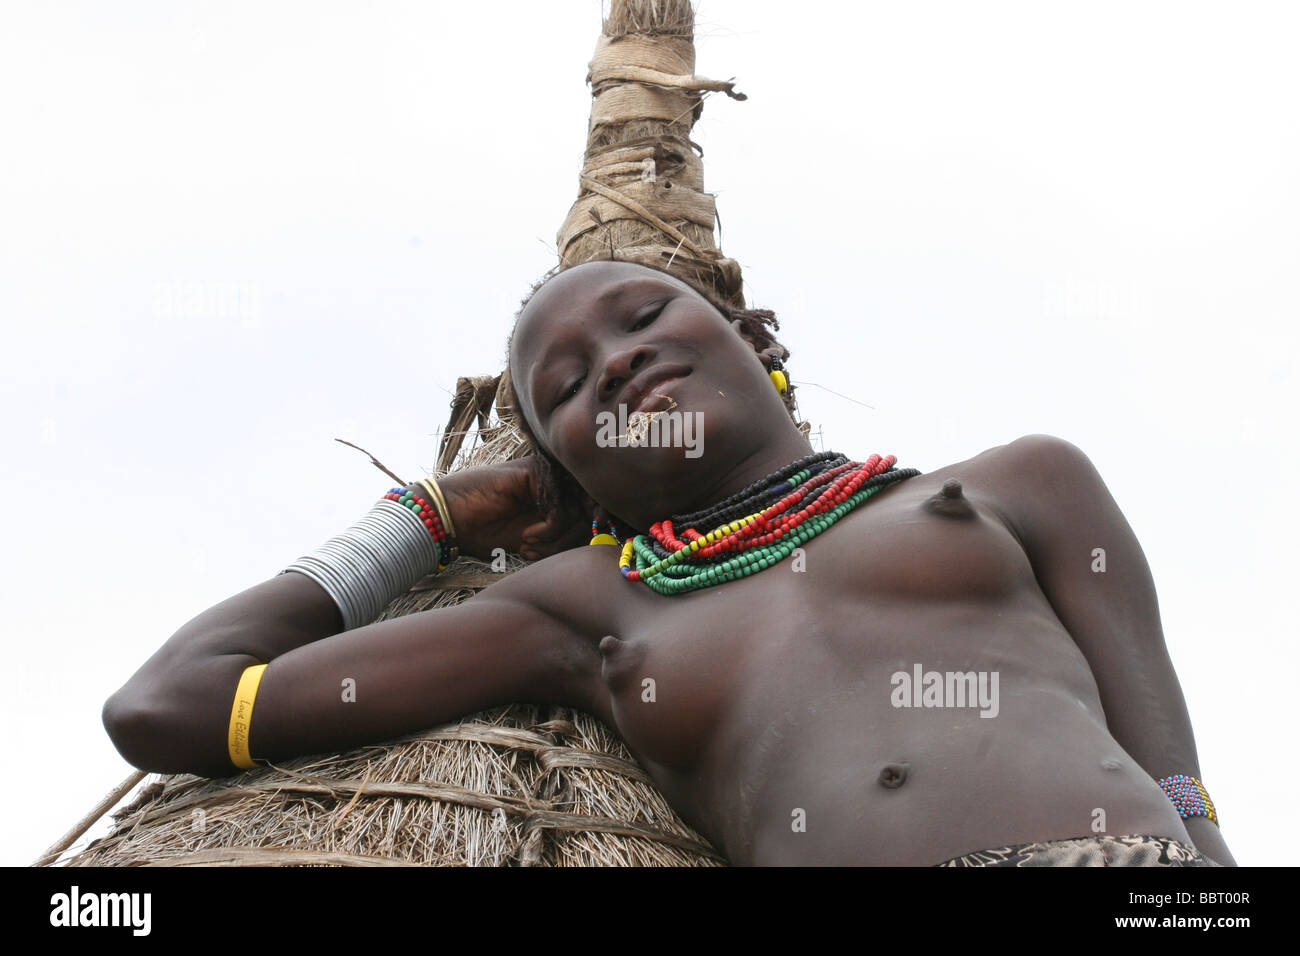 Vallée de l'Omo Ethiopie Afrique femme tribu Daasanach Banque D'Images